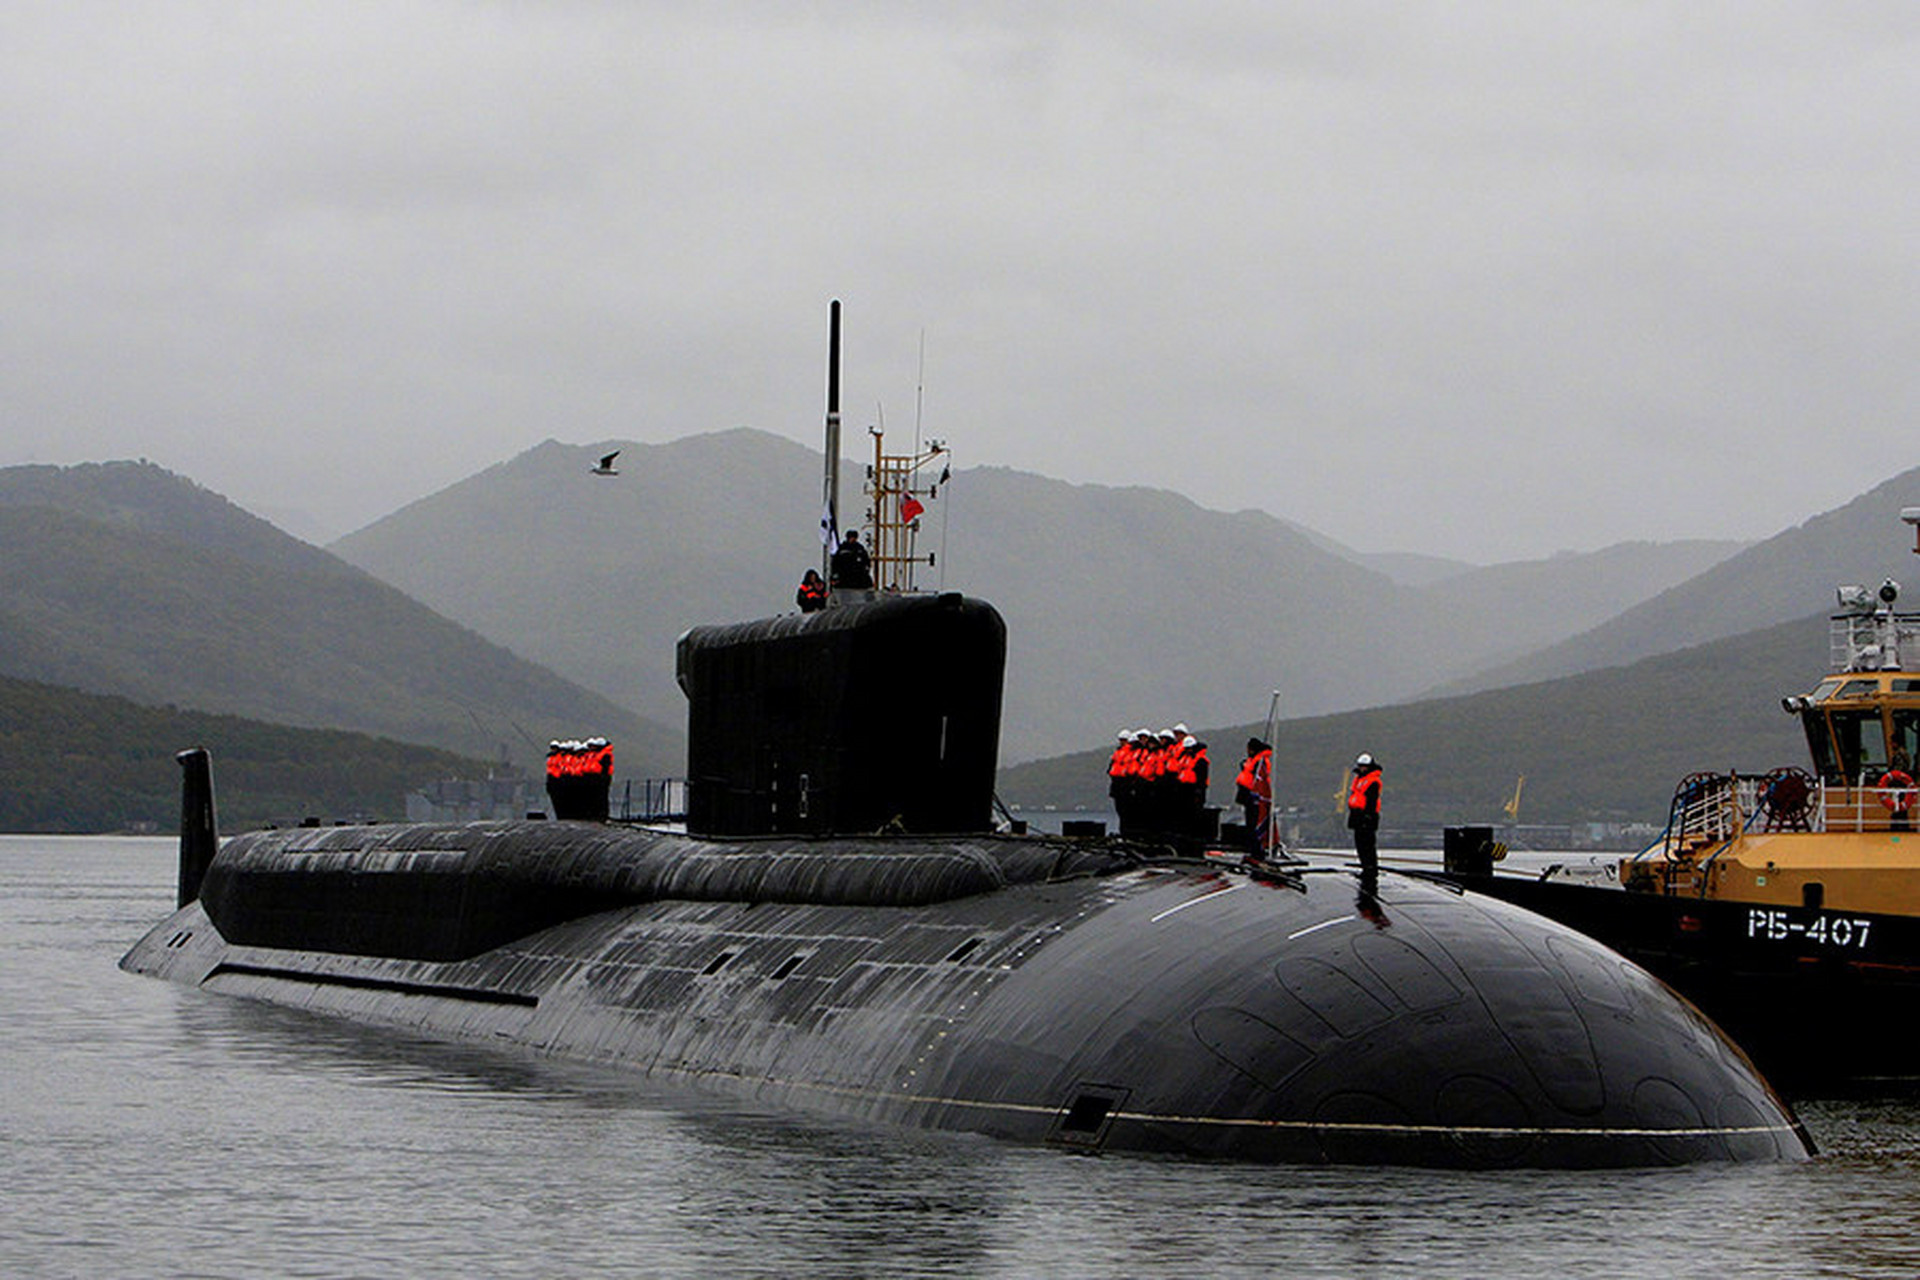 俄罗斯海军的北风之神级战略核潜艇和北风之神a级战略核潜艇,目前